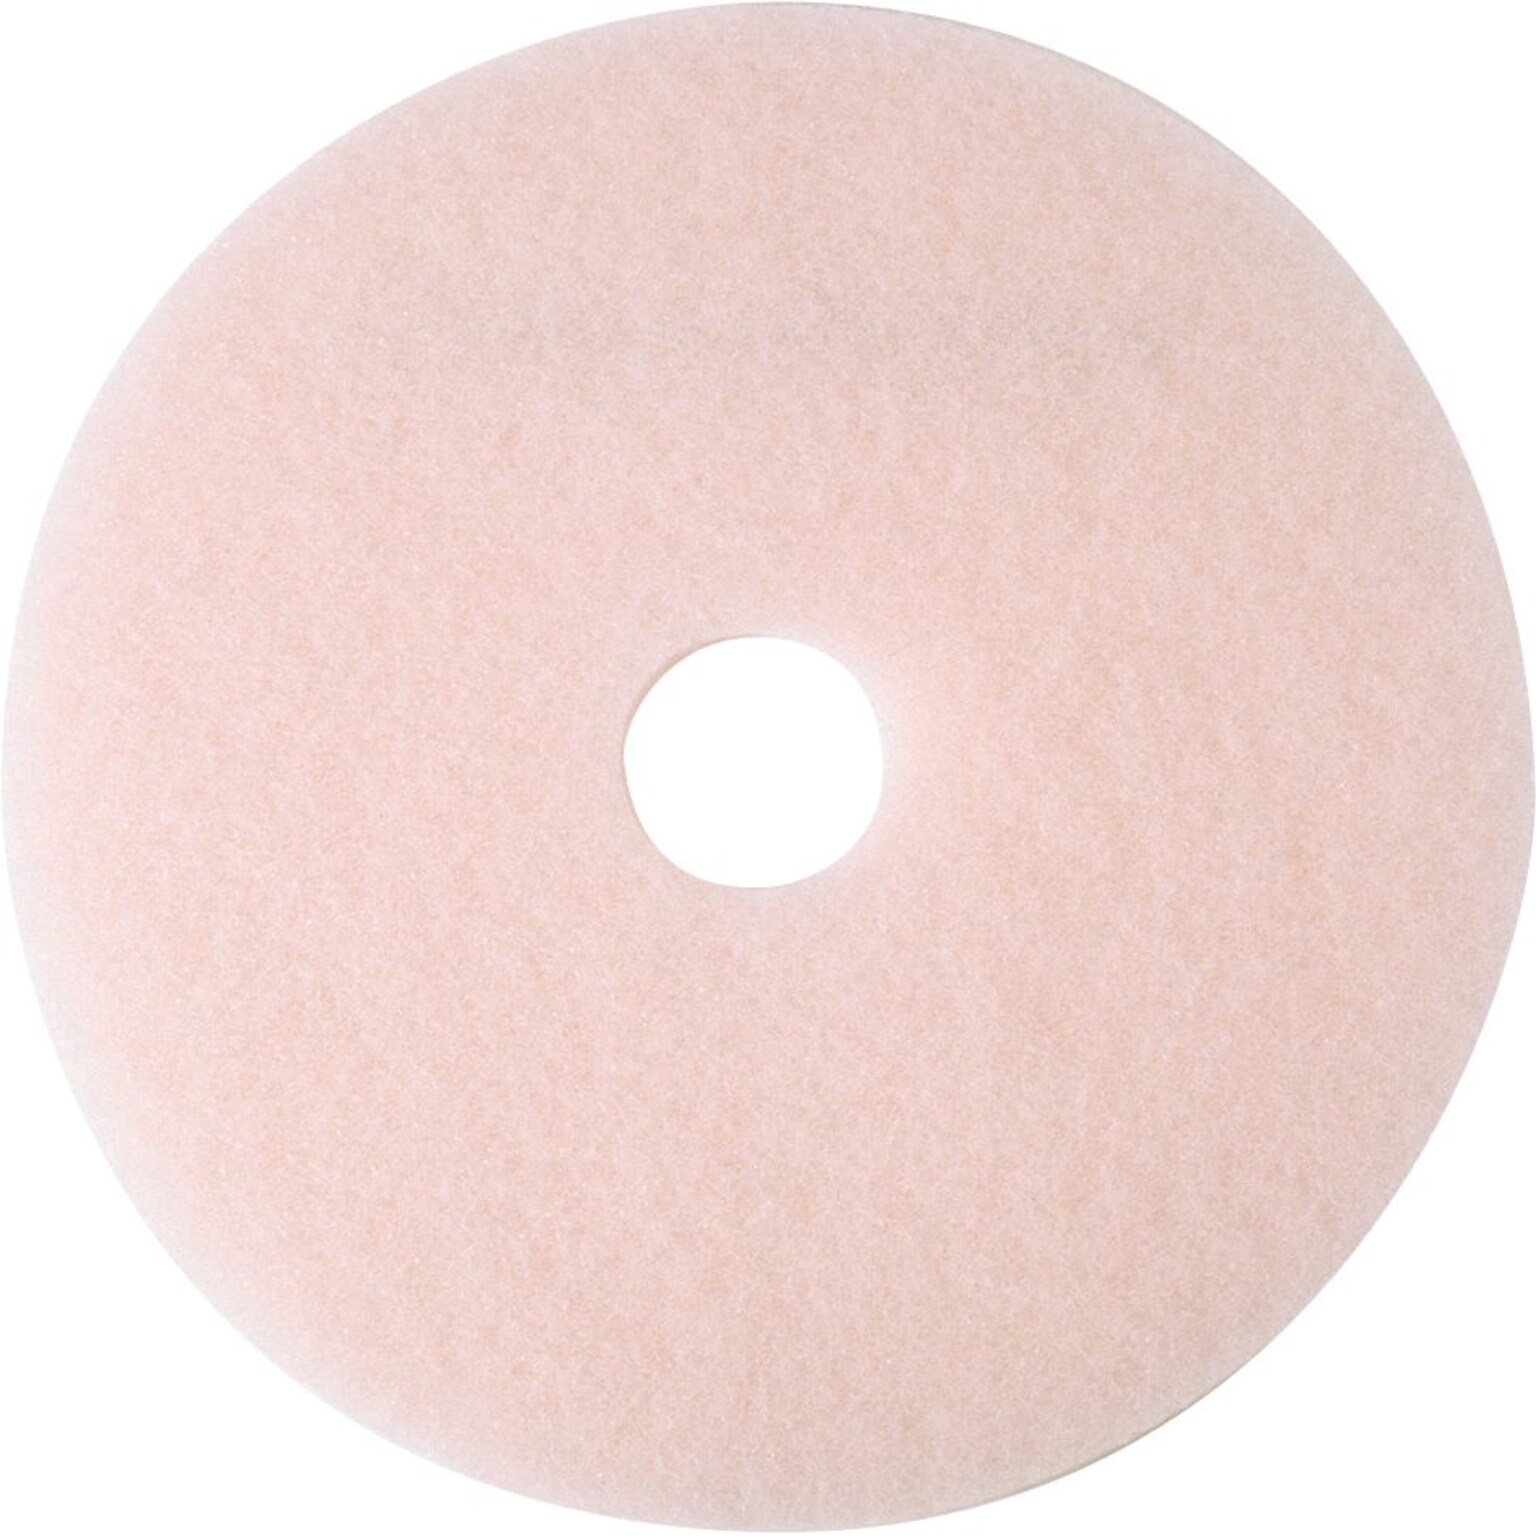 3M 20 Burnish Floor Pad, Pink, 5/Carton (360020)